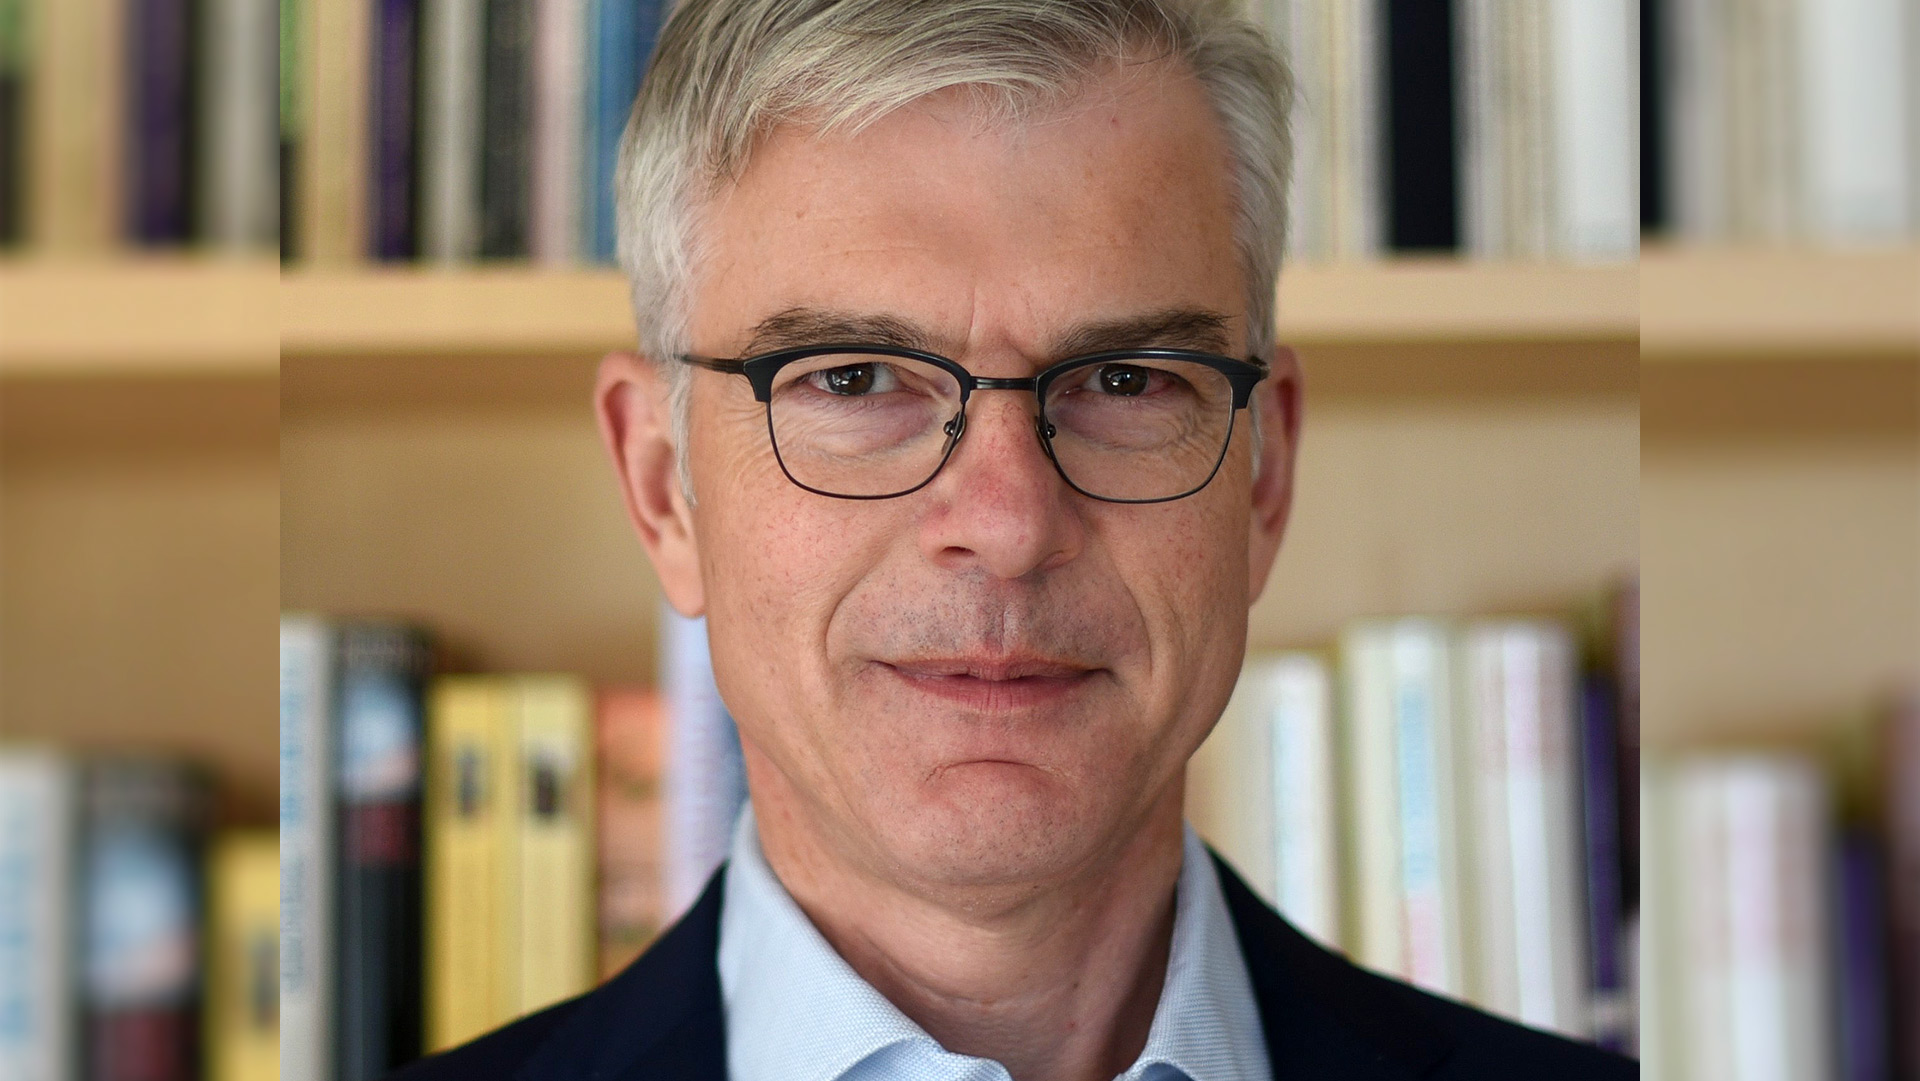 Prof. Dr. Martin Werding, Lehrstuhl für Sozialpolitik und öffentliche Finanzen, Ruhruniversität Bochum | privat